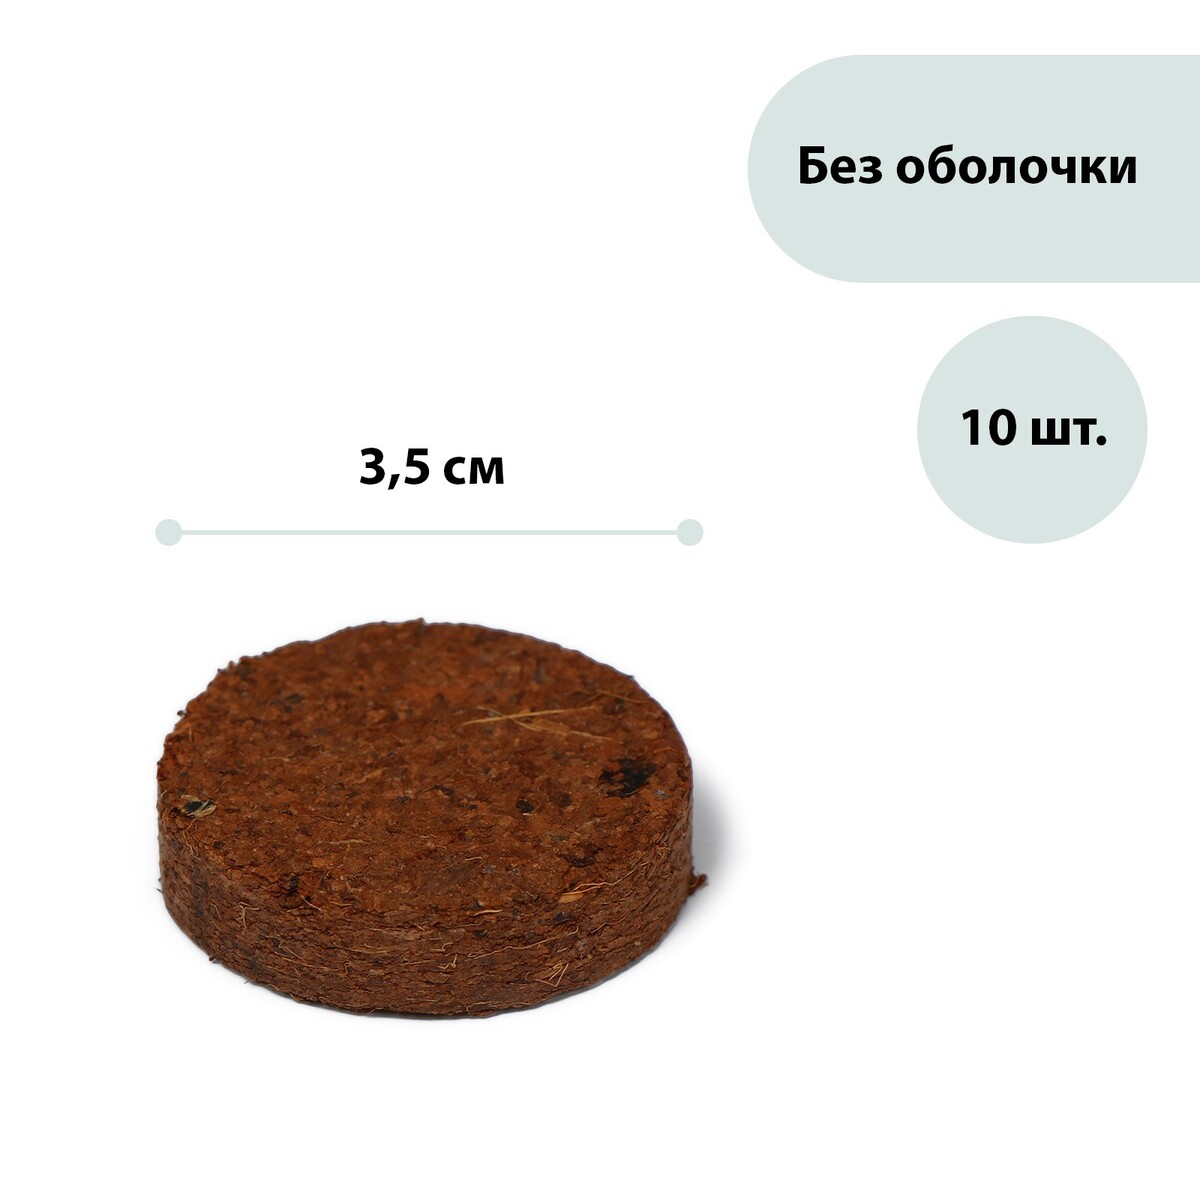 Таблетки кокосовые, d = 3,5 см, без оболочки, набор 10 шт., greengo